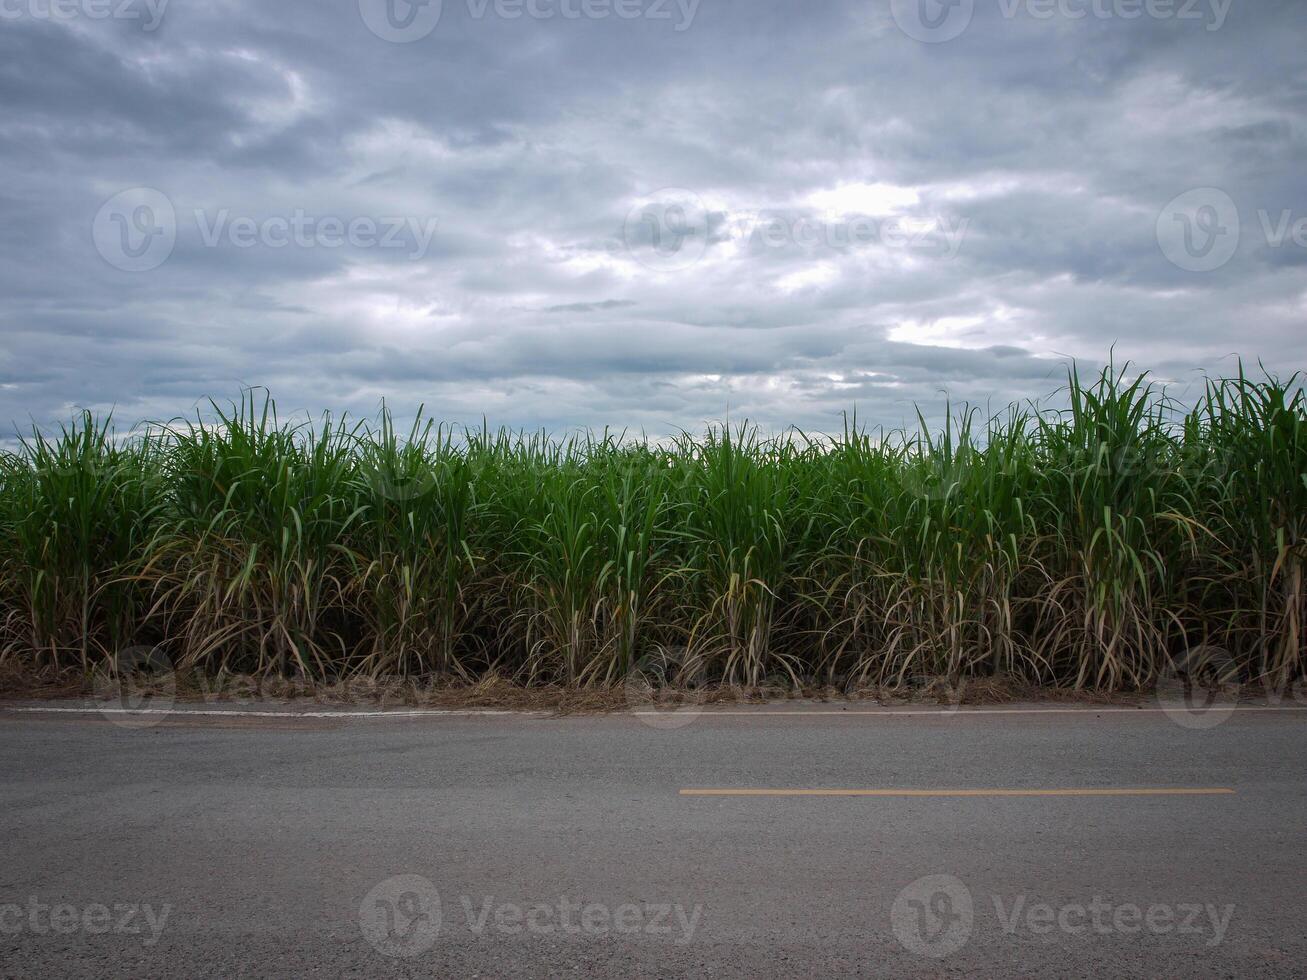 plantaciones de caña de azúcar, la planta tropical agrícola en tailandia. foto